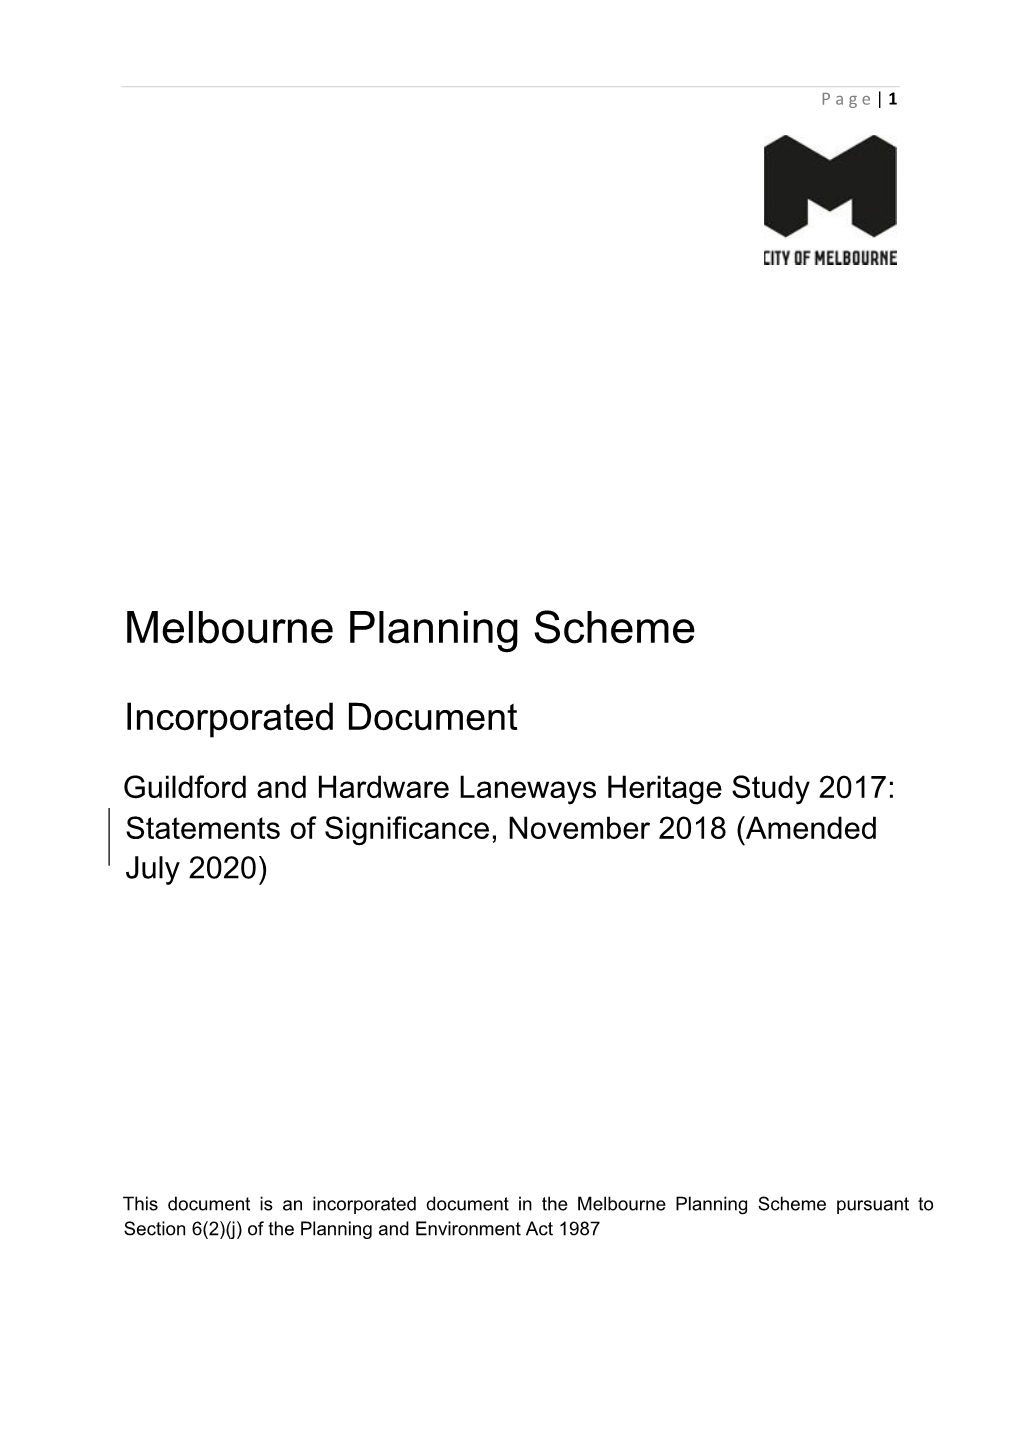 Melbourne Planning Scheme